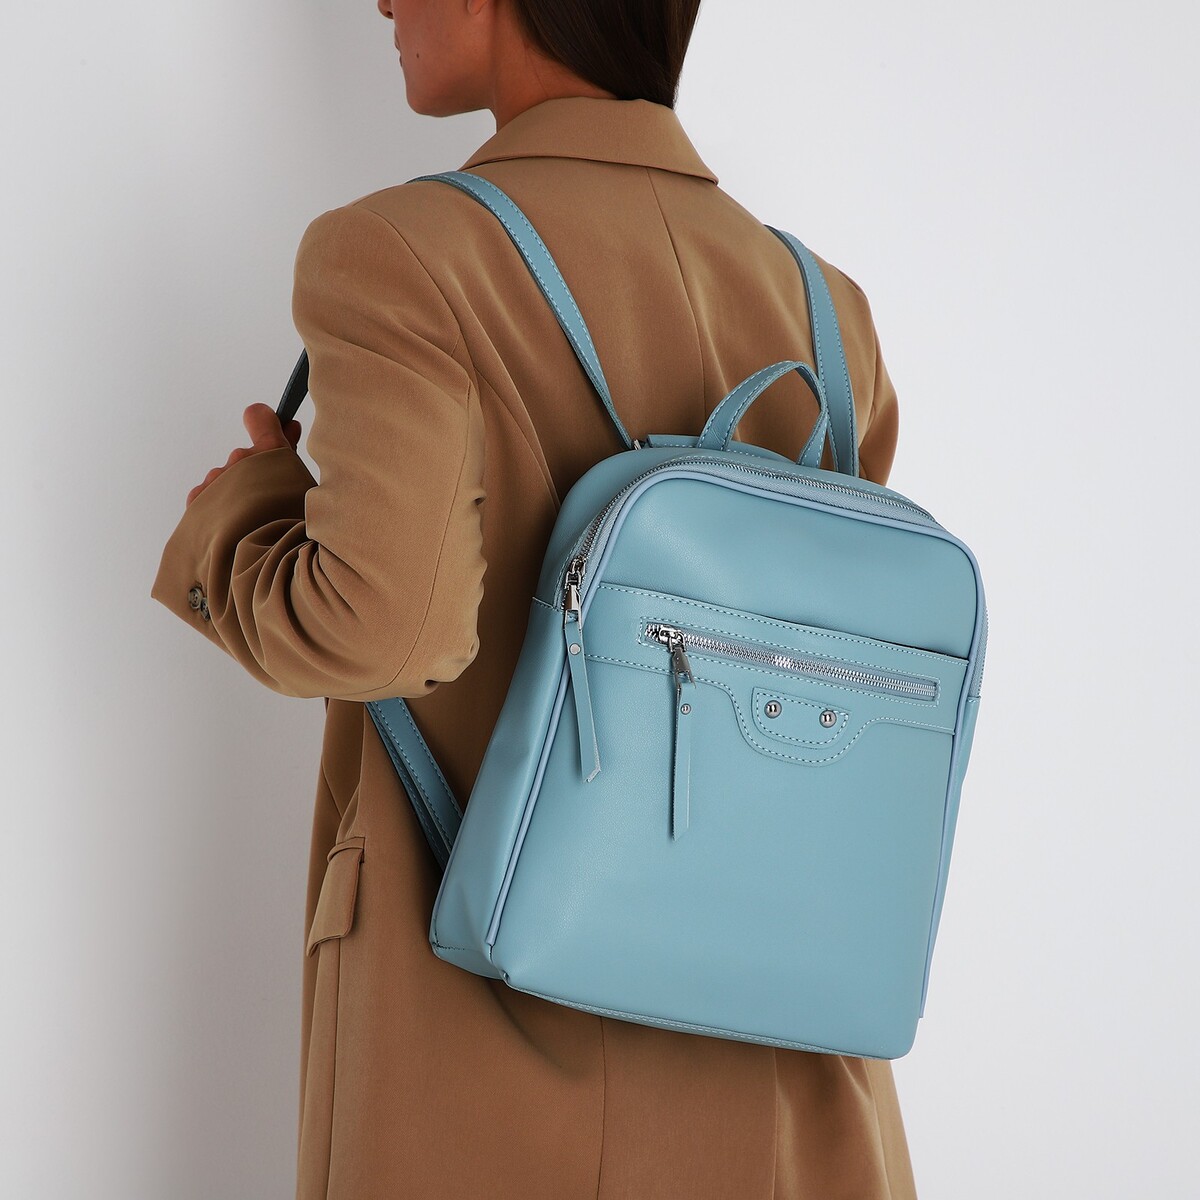 Рюкзак женский из искусственной кожи на молнии, 3 кармана, цвет голубой рюкзак городской из искусственной кожи на молнии 3 кармана